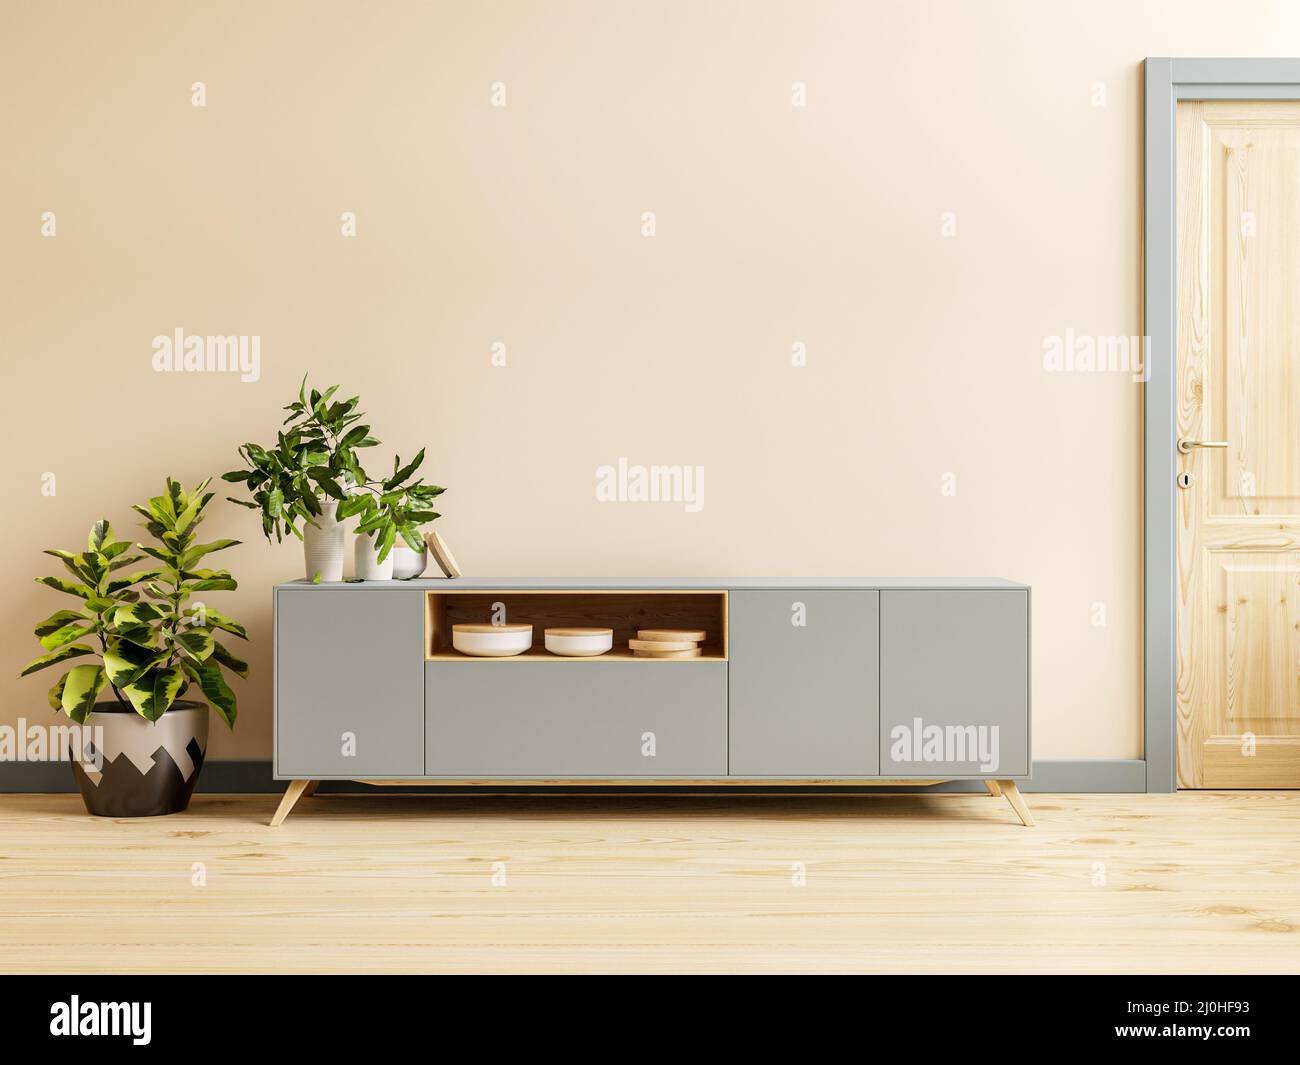 Fond de mur de couleur crème, décor moderne de salon avec un meuble tv.3D rendu Banque D'Images